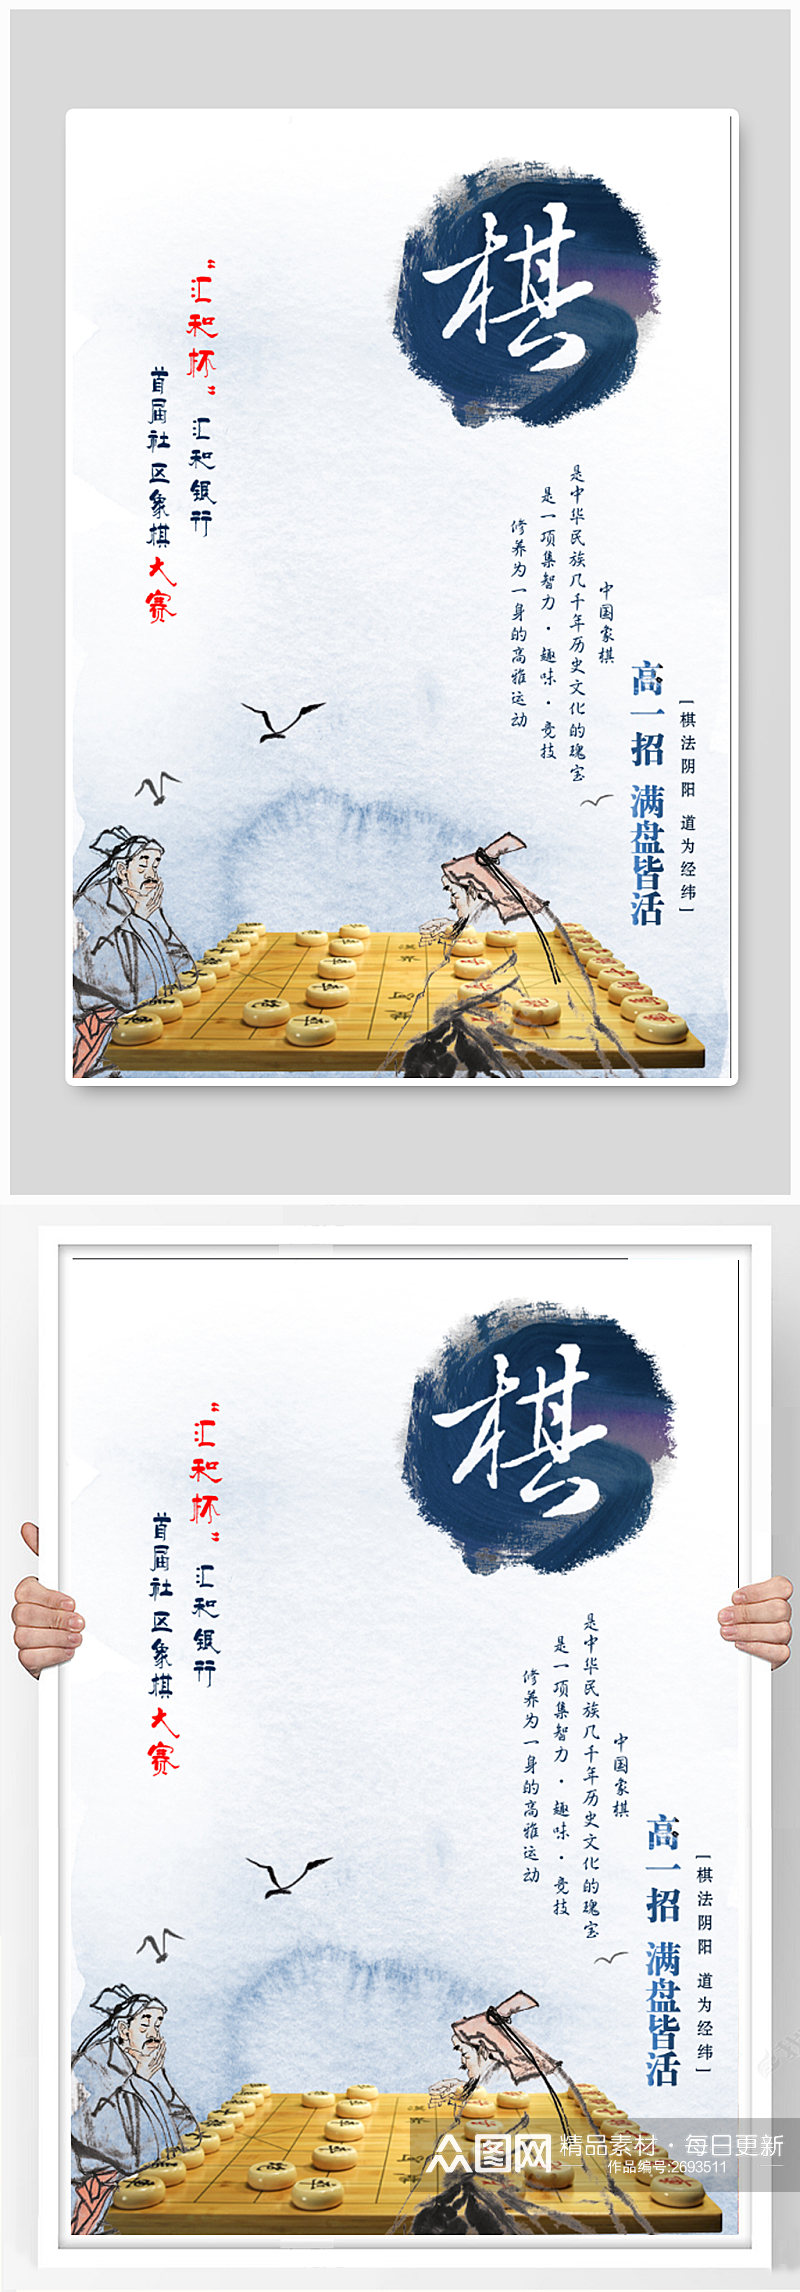 中国风棋院宣传海报素材